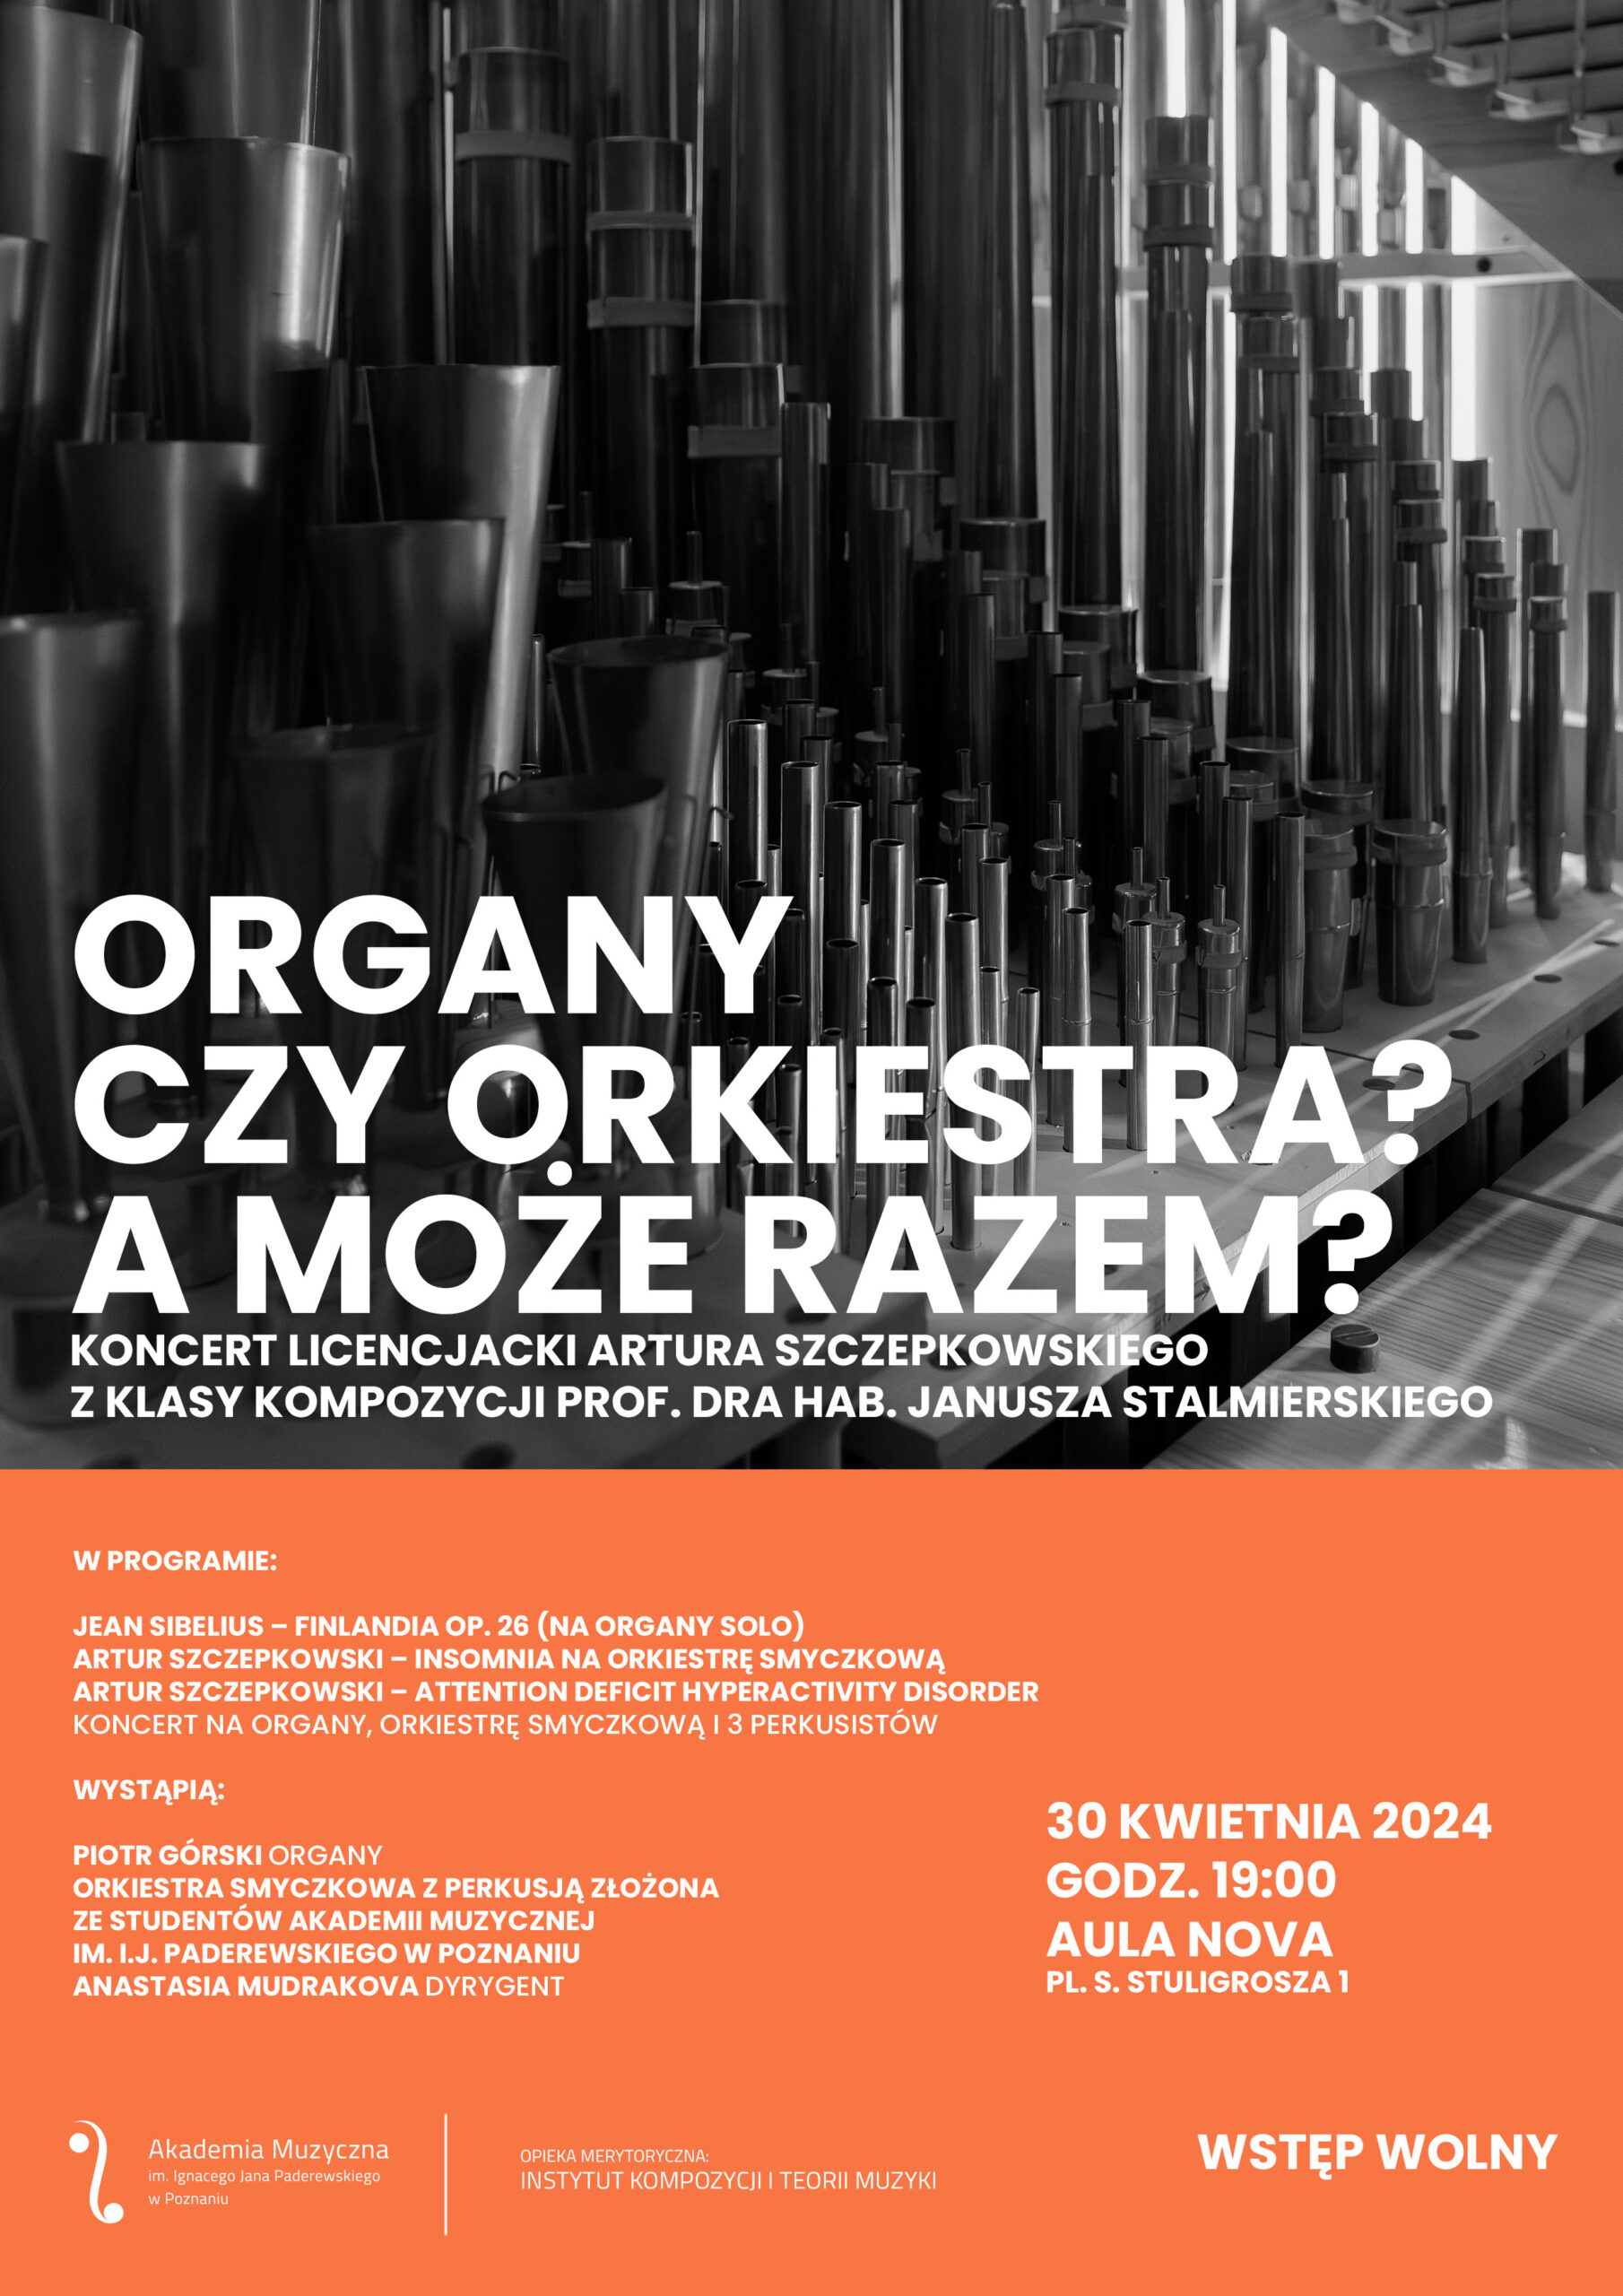 Afisz zawiera informacje na temat koncertu - recitalu dyplomowego Artura Szczepkowskiego w dniu 30 kwietnia 2024